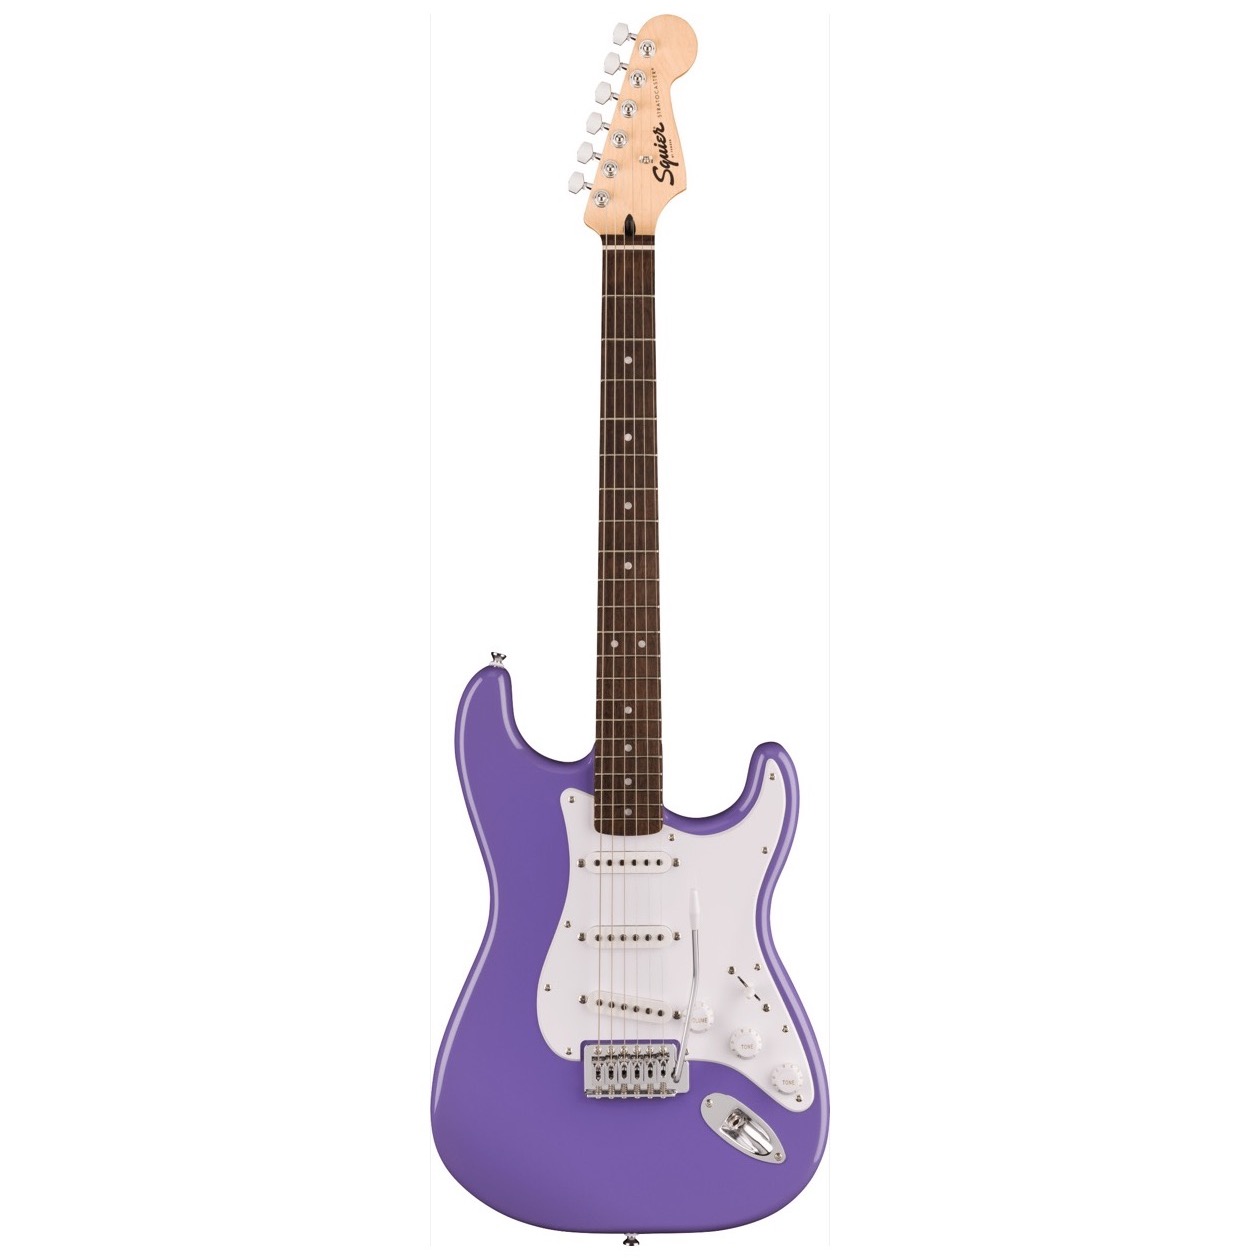 Fender Squier Sonic Stratocaster, Laurel Fingerboard, White Pickguard, Ultraviolet NIEUW VOOR 2023